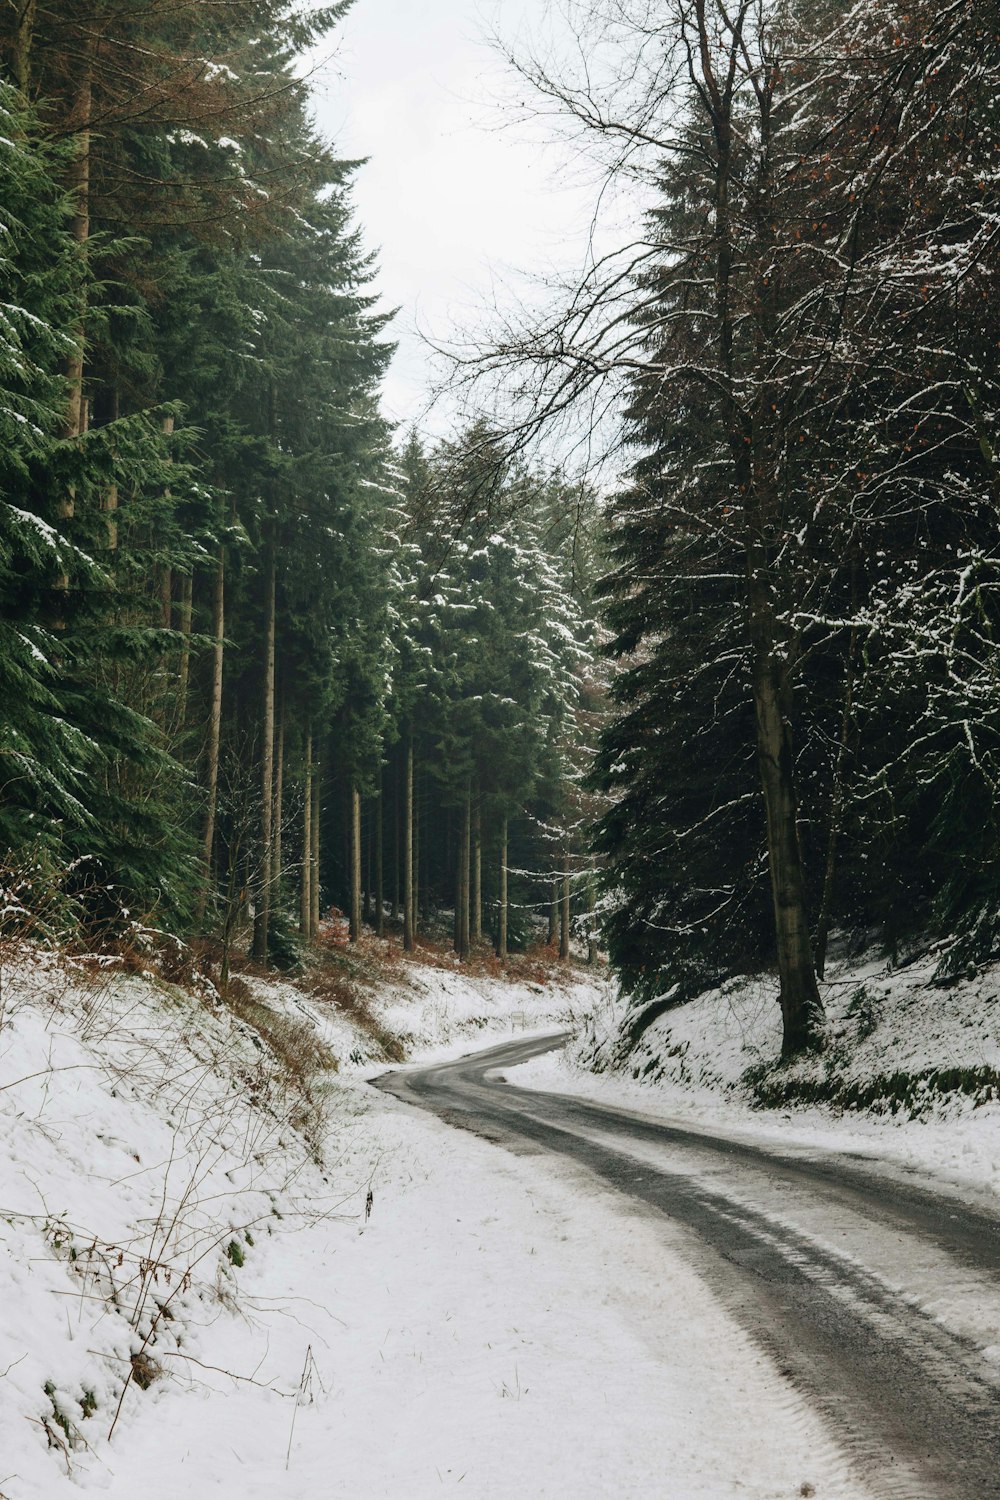 strada grigia in mezzo alla foresta coperta di neve